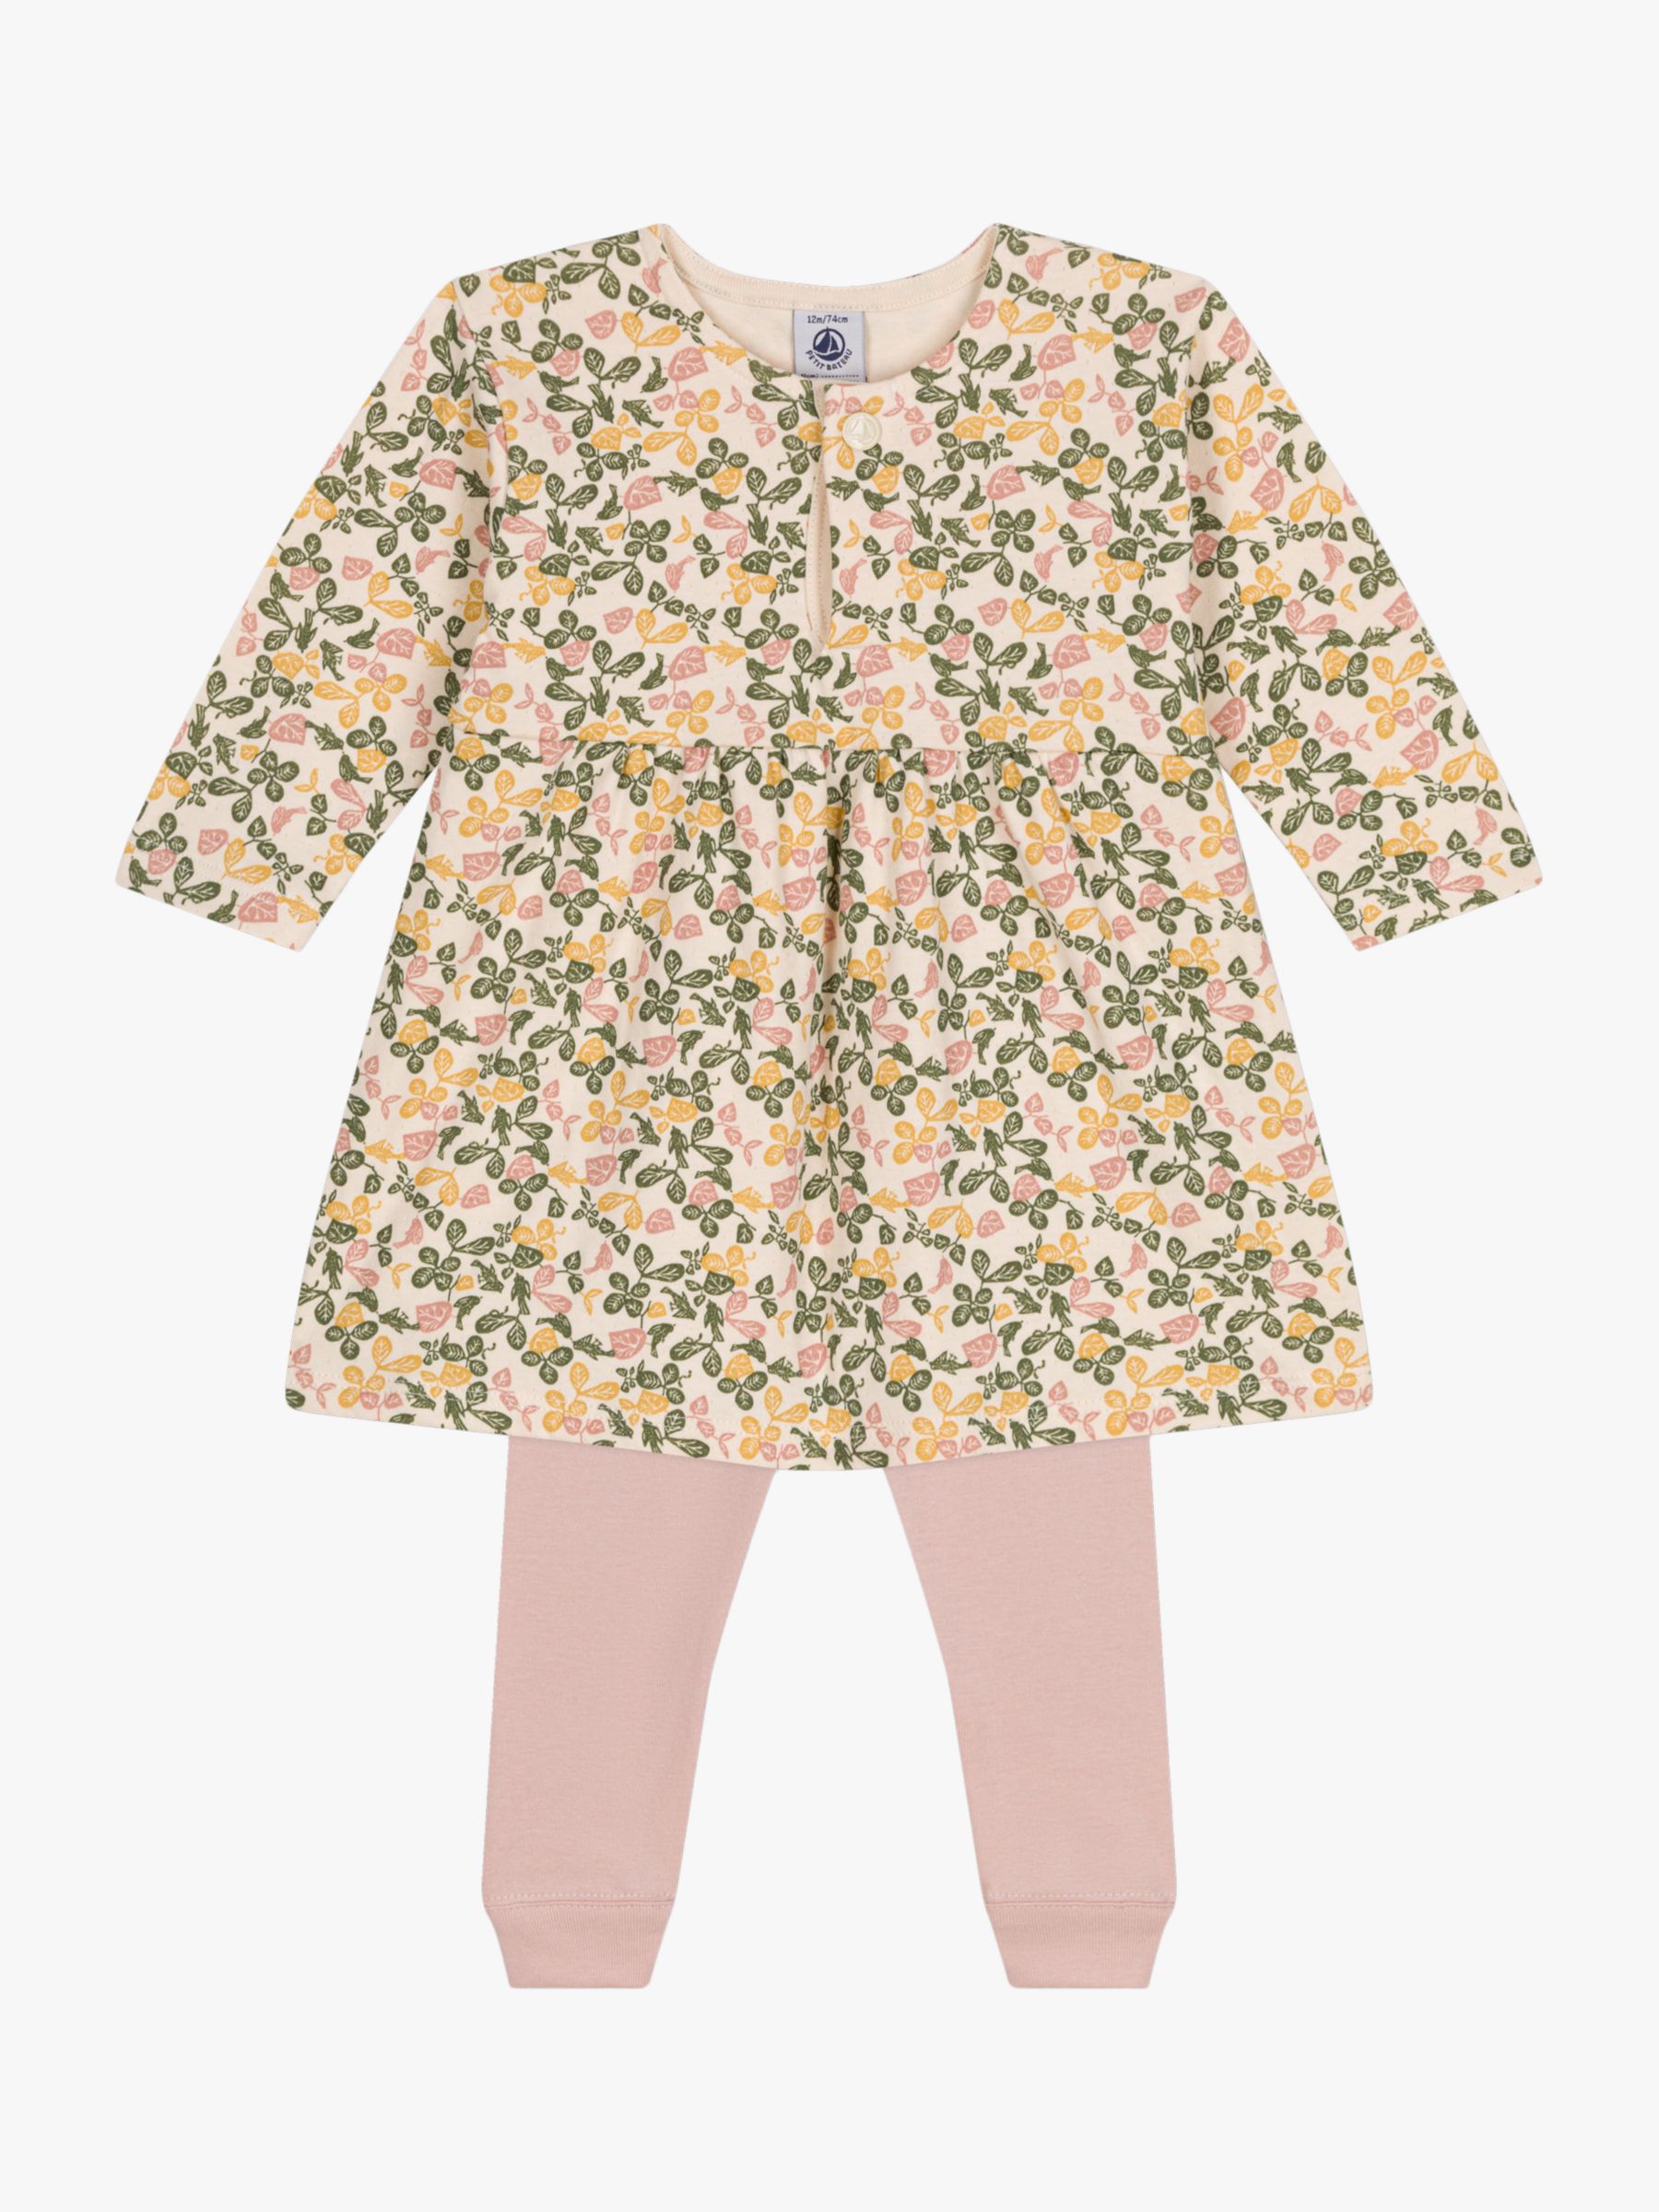 Petit Bateau Baby Floral Dress & Leggings Set, Avalanche/Multi, 6 months